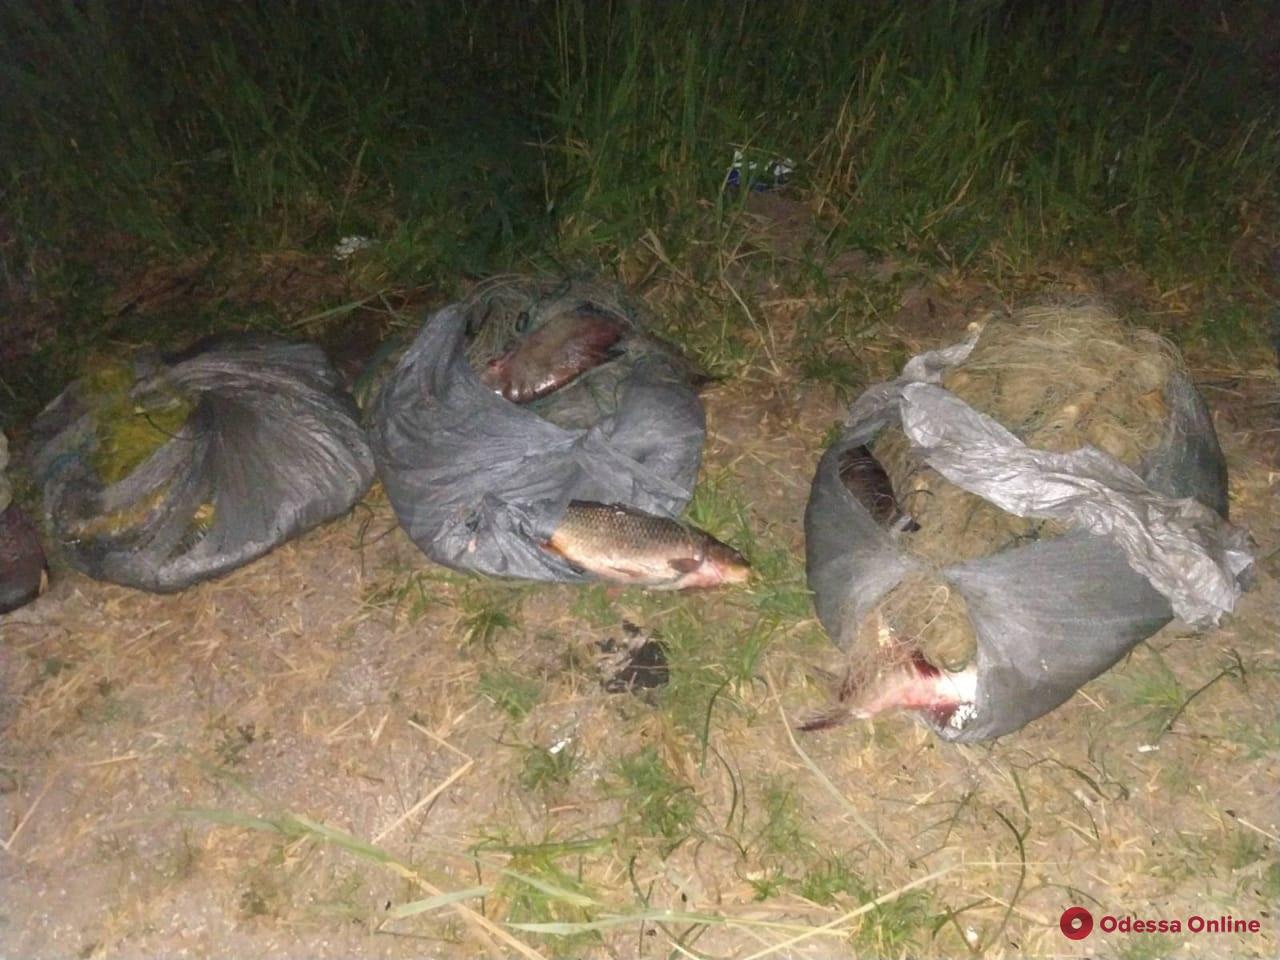 В Одесской области автомобиль с браконьерами сбил пограничника